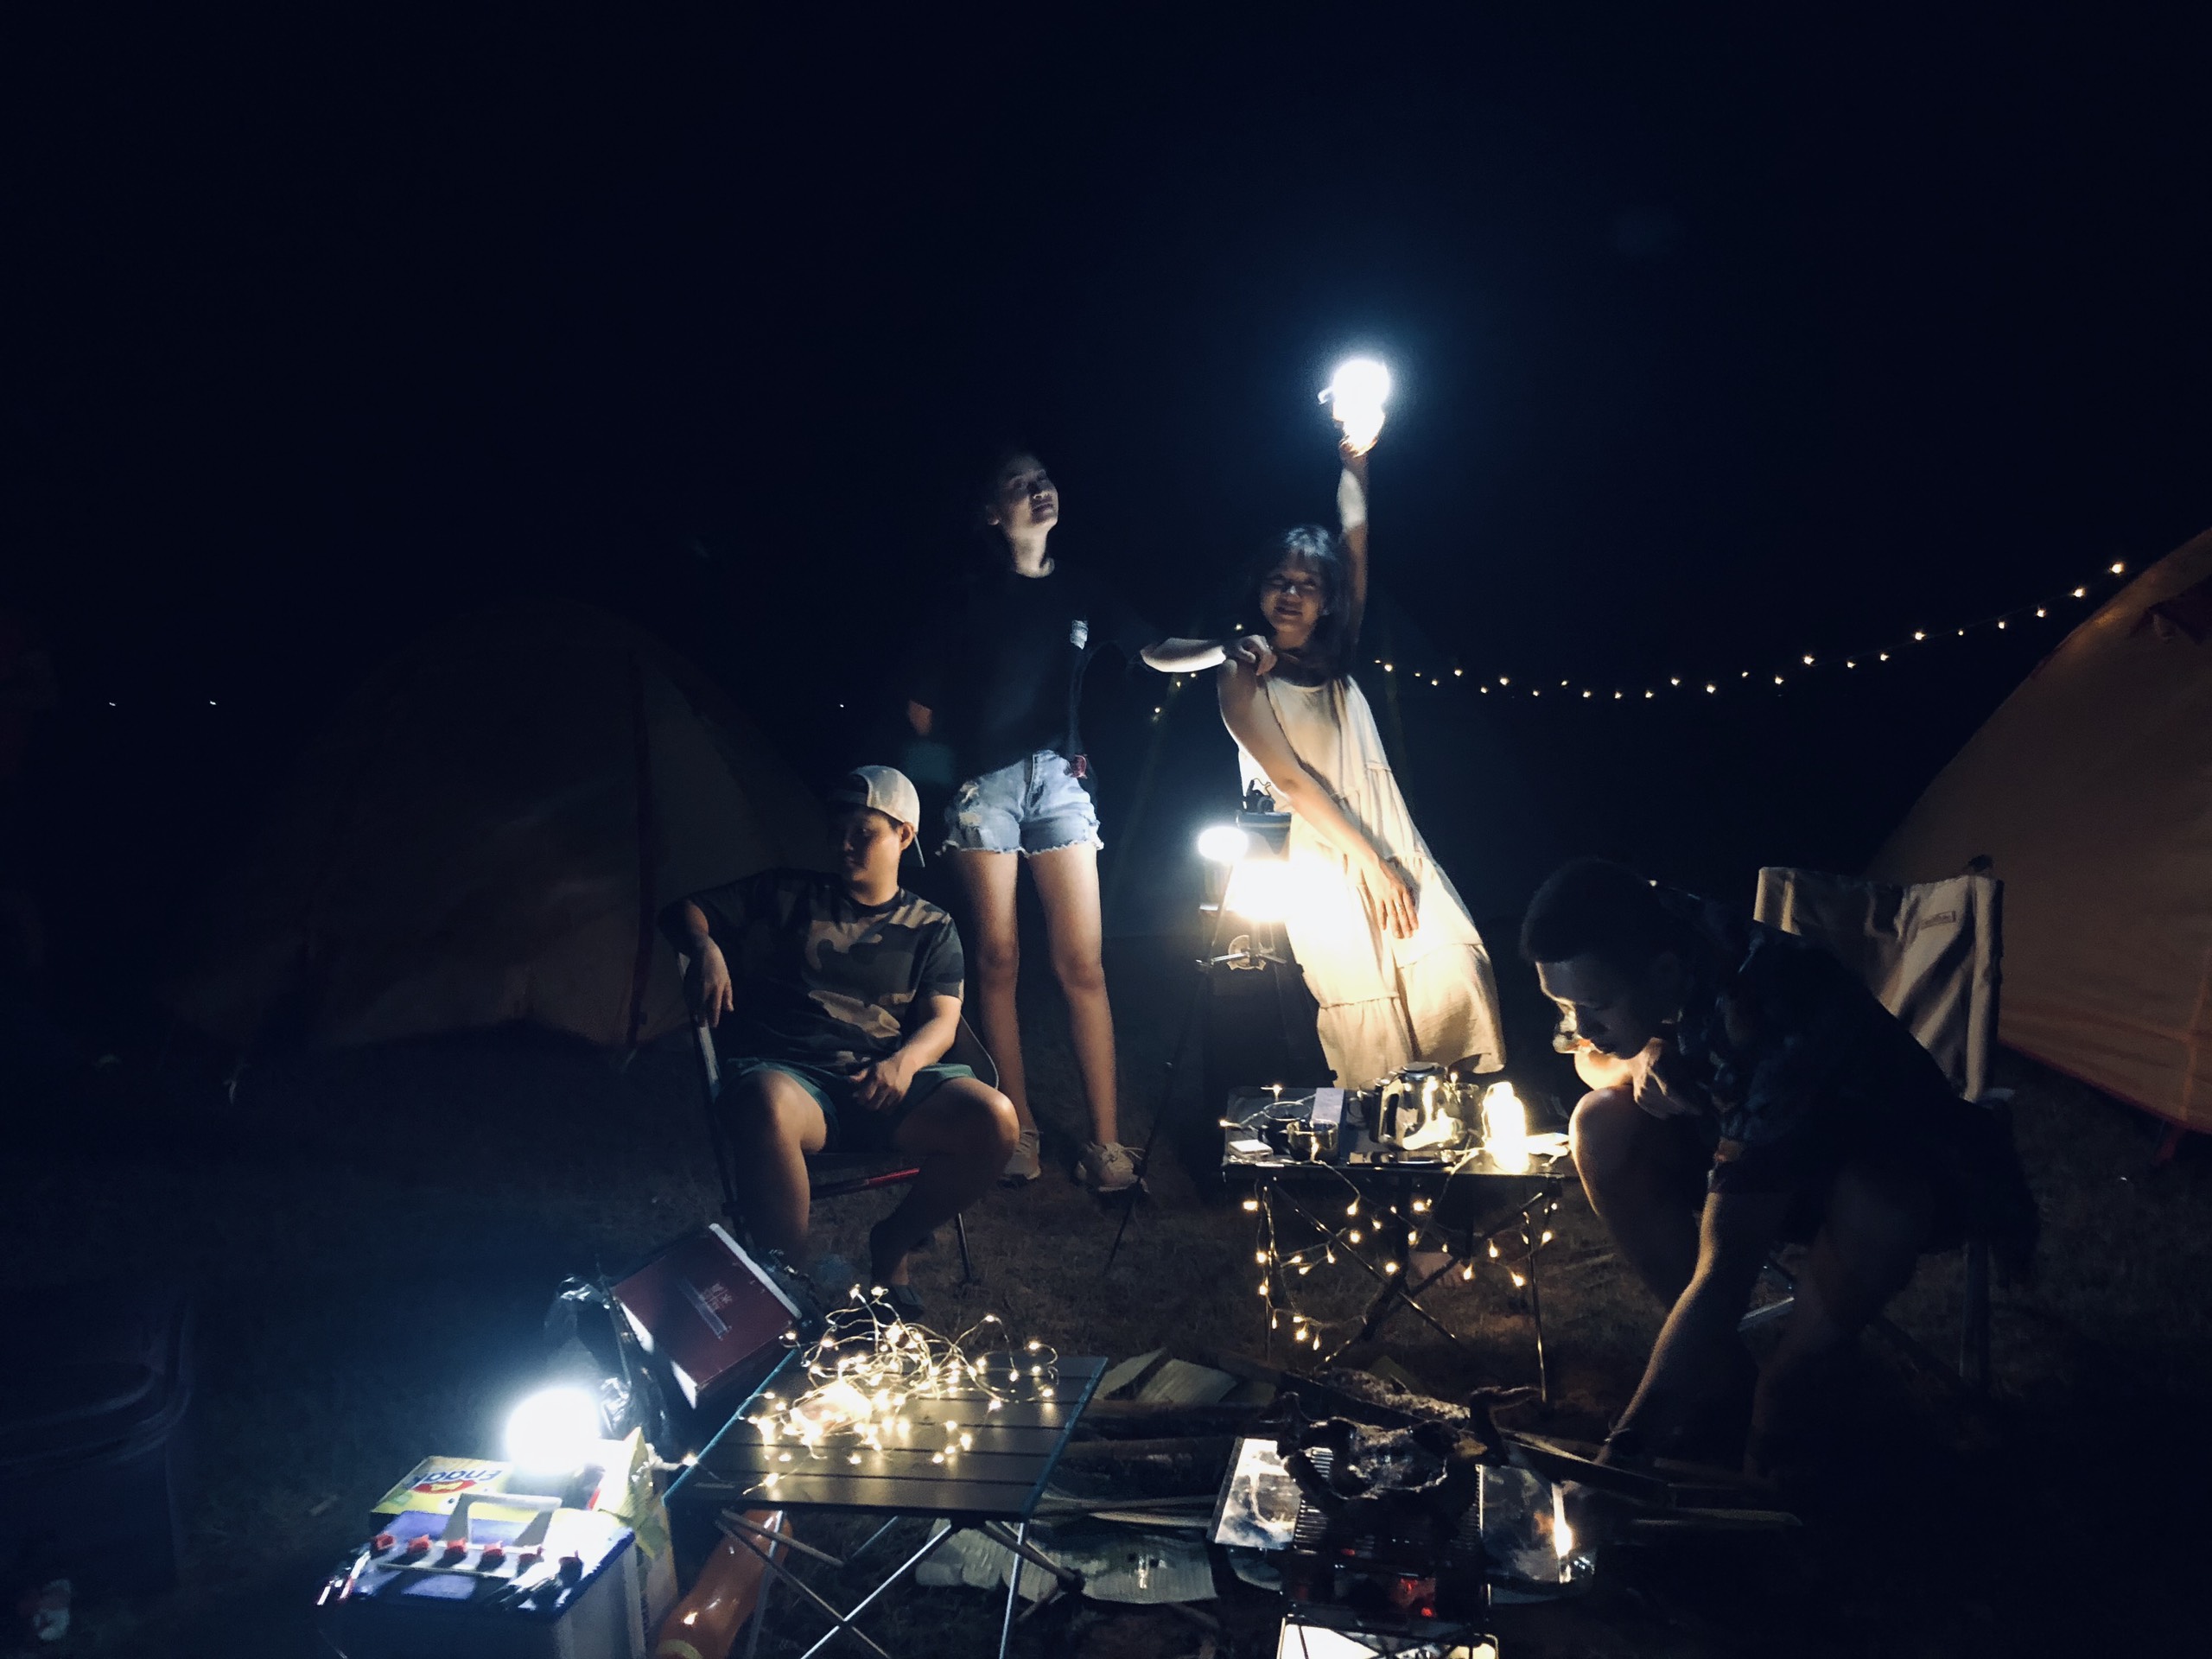 Haydi Team Building – Hữu Liên chill camping – Lạng Sơn